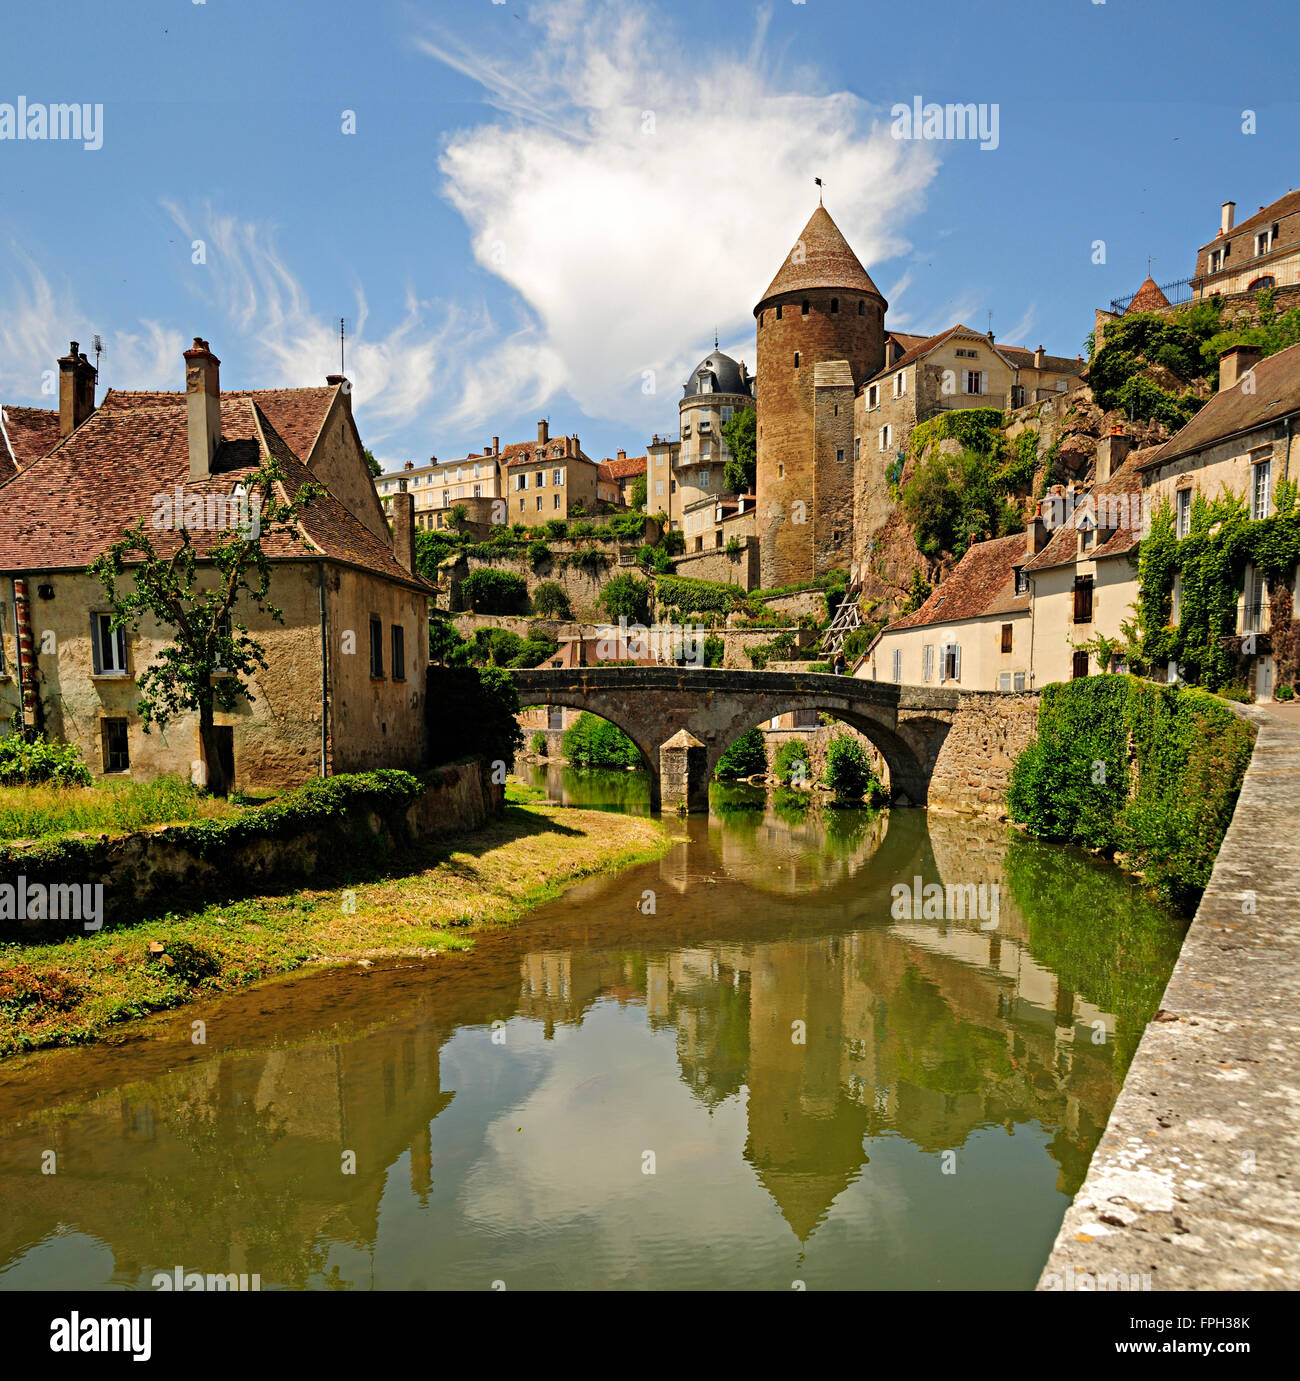 Il castello e il fiume in Borgogna medievale città di Semur en Auxois. Foto Stock